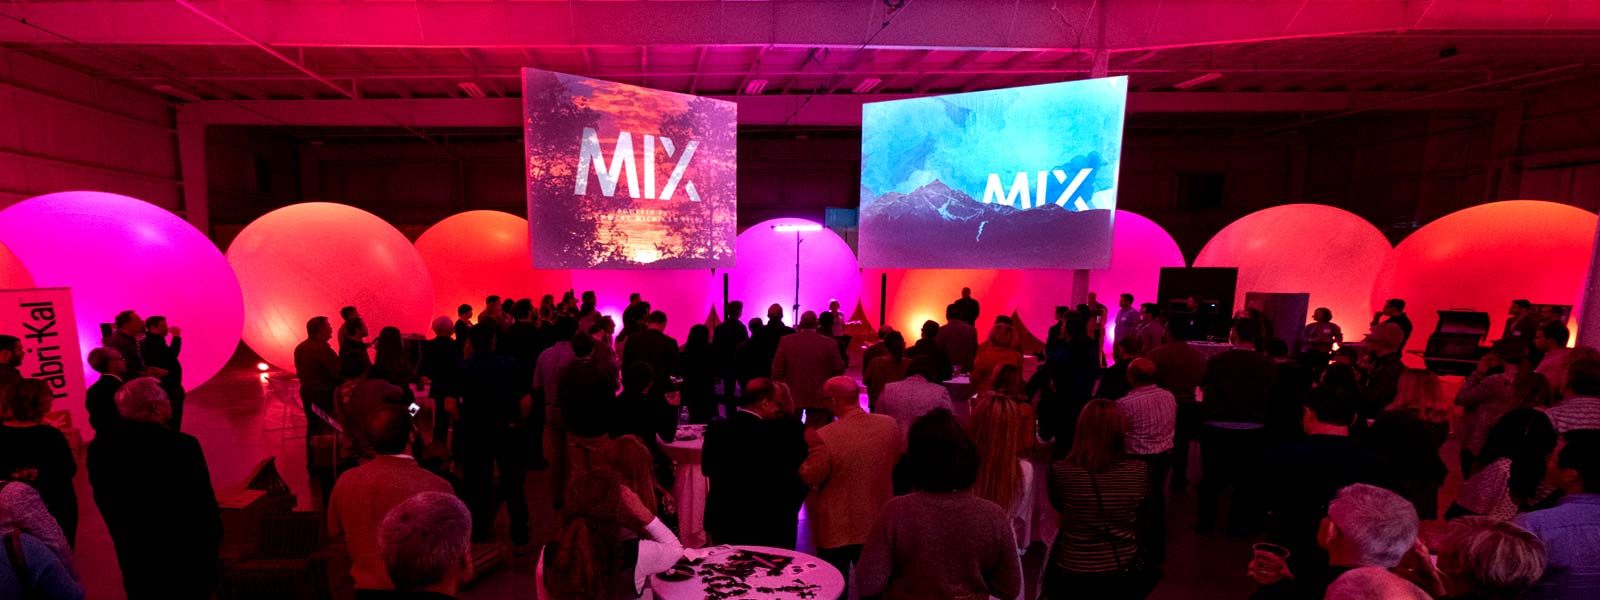 a 2016 MIX event